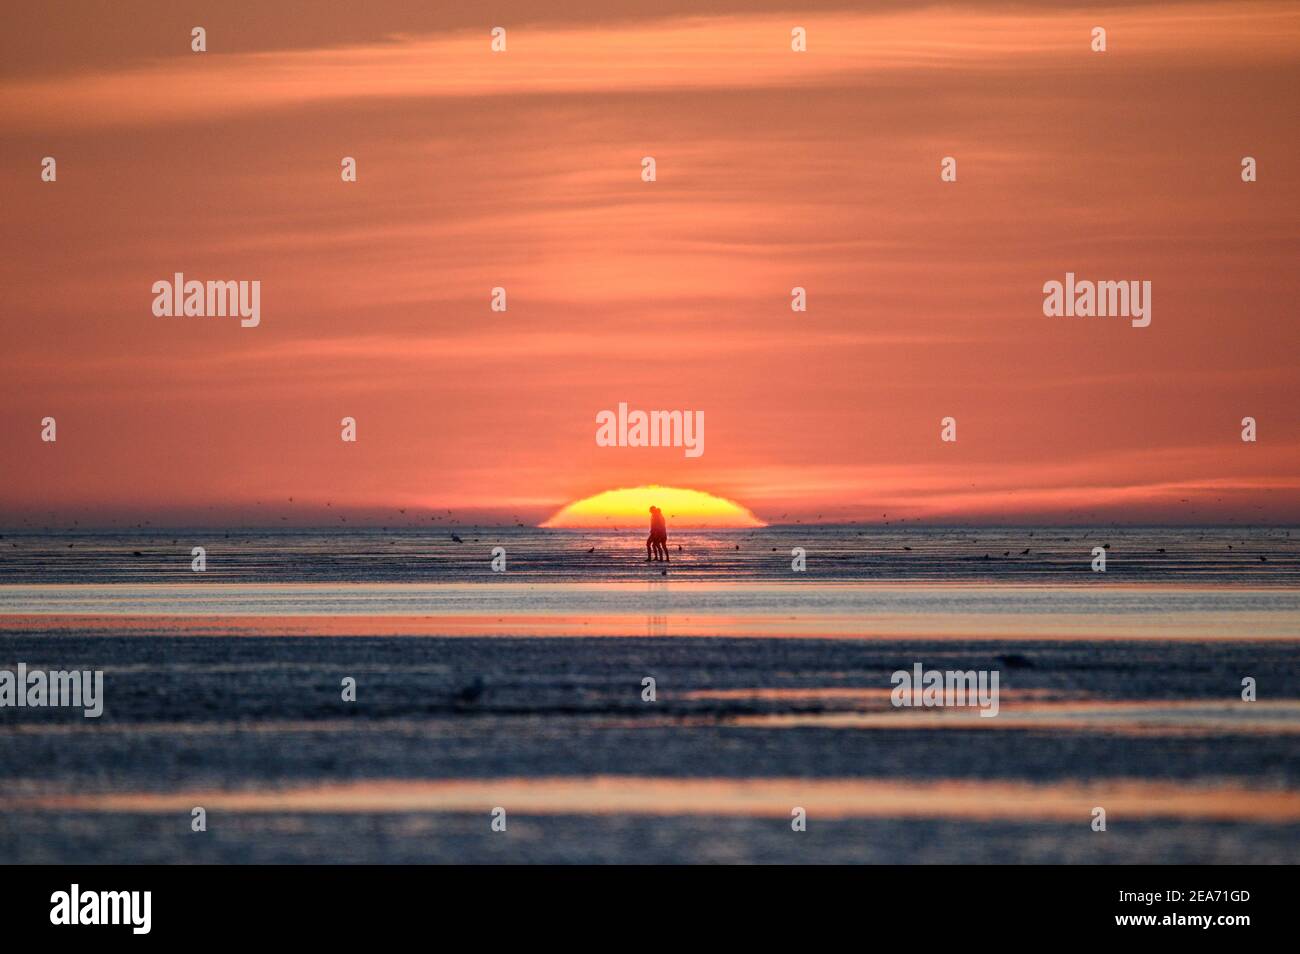 Menschen bei Sonnenuntergang im wattenmeer in Cuxhaven bei Sonnenuntergang - Menschen im Watt von Cuxhaven im Sonnenuntergang Stockfoto